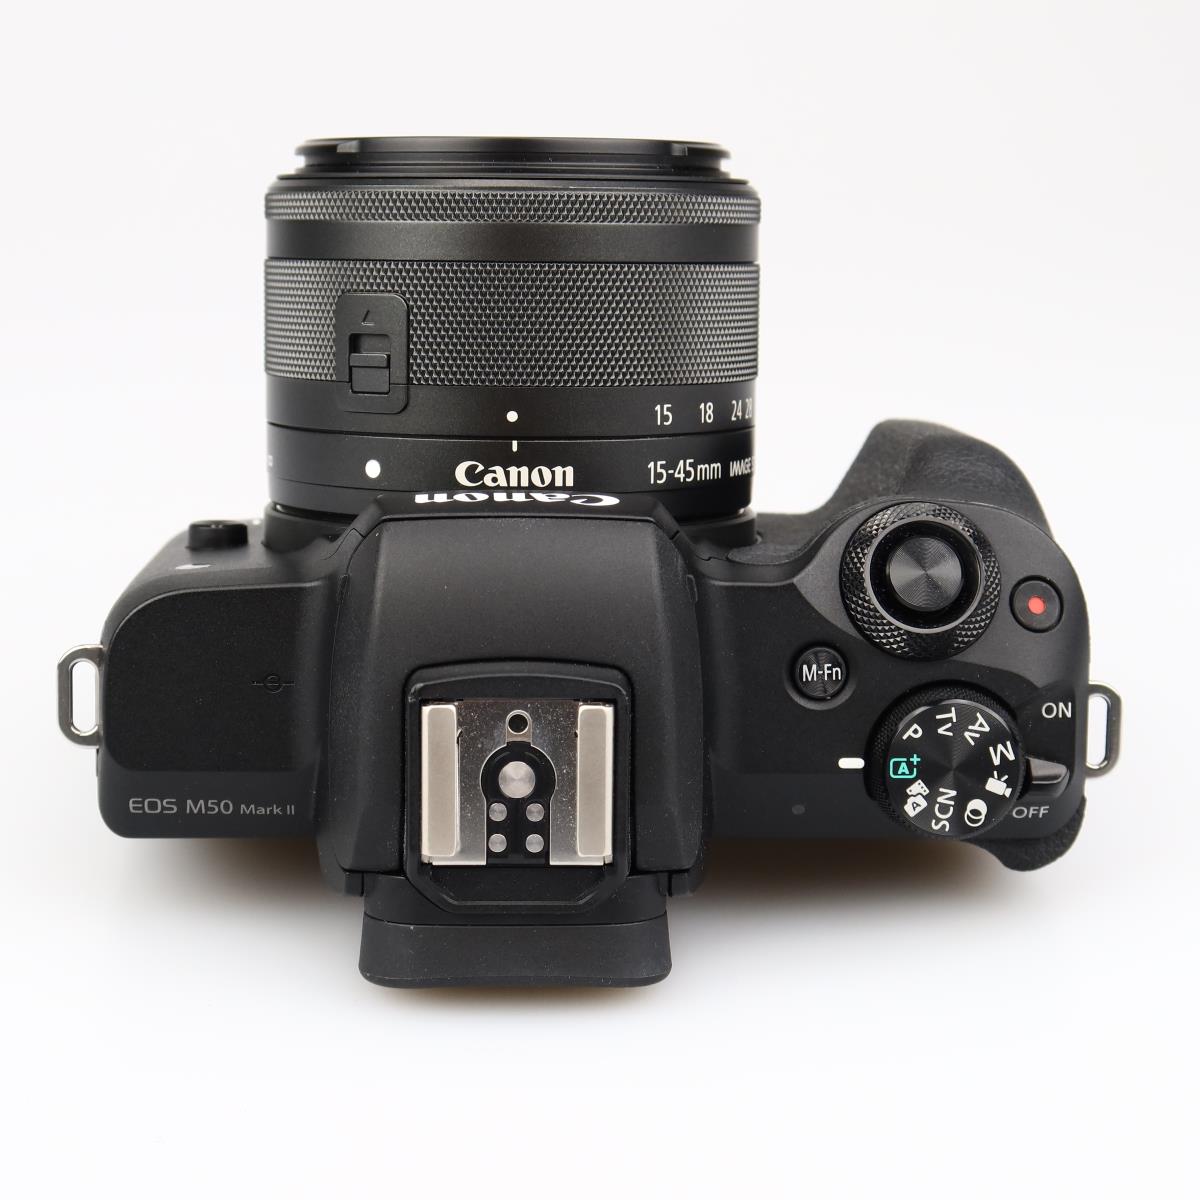 (Myyty) Canon EOS M50 Mark II + 15-45mm Kit - Musta (sc max 5000) (käytetty) (Takuu)